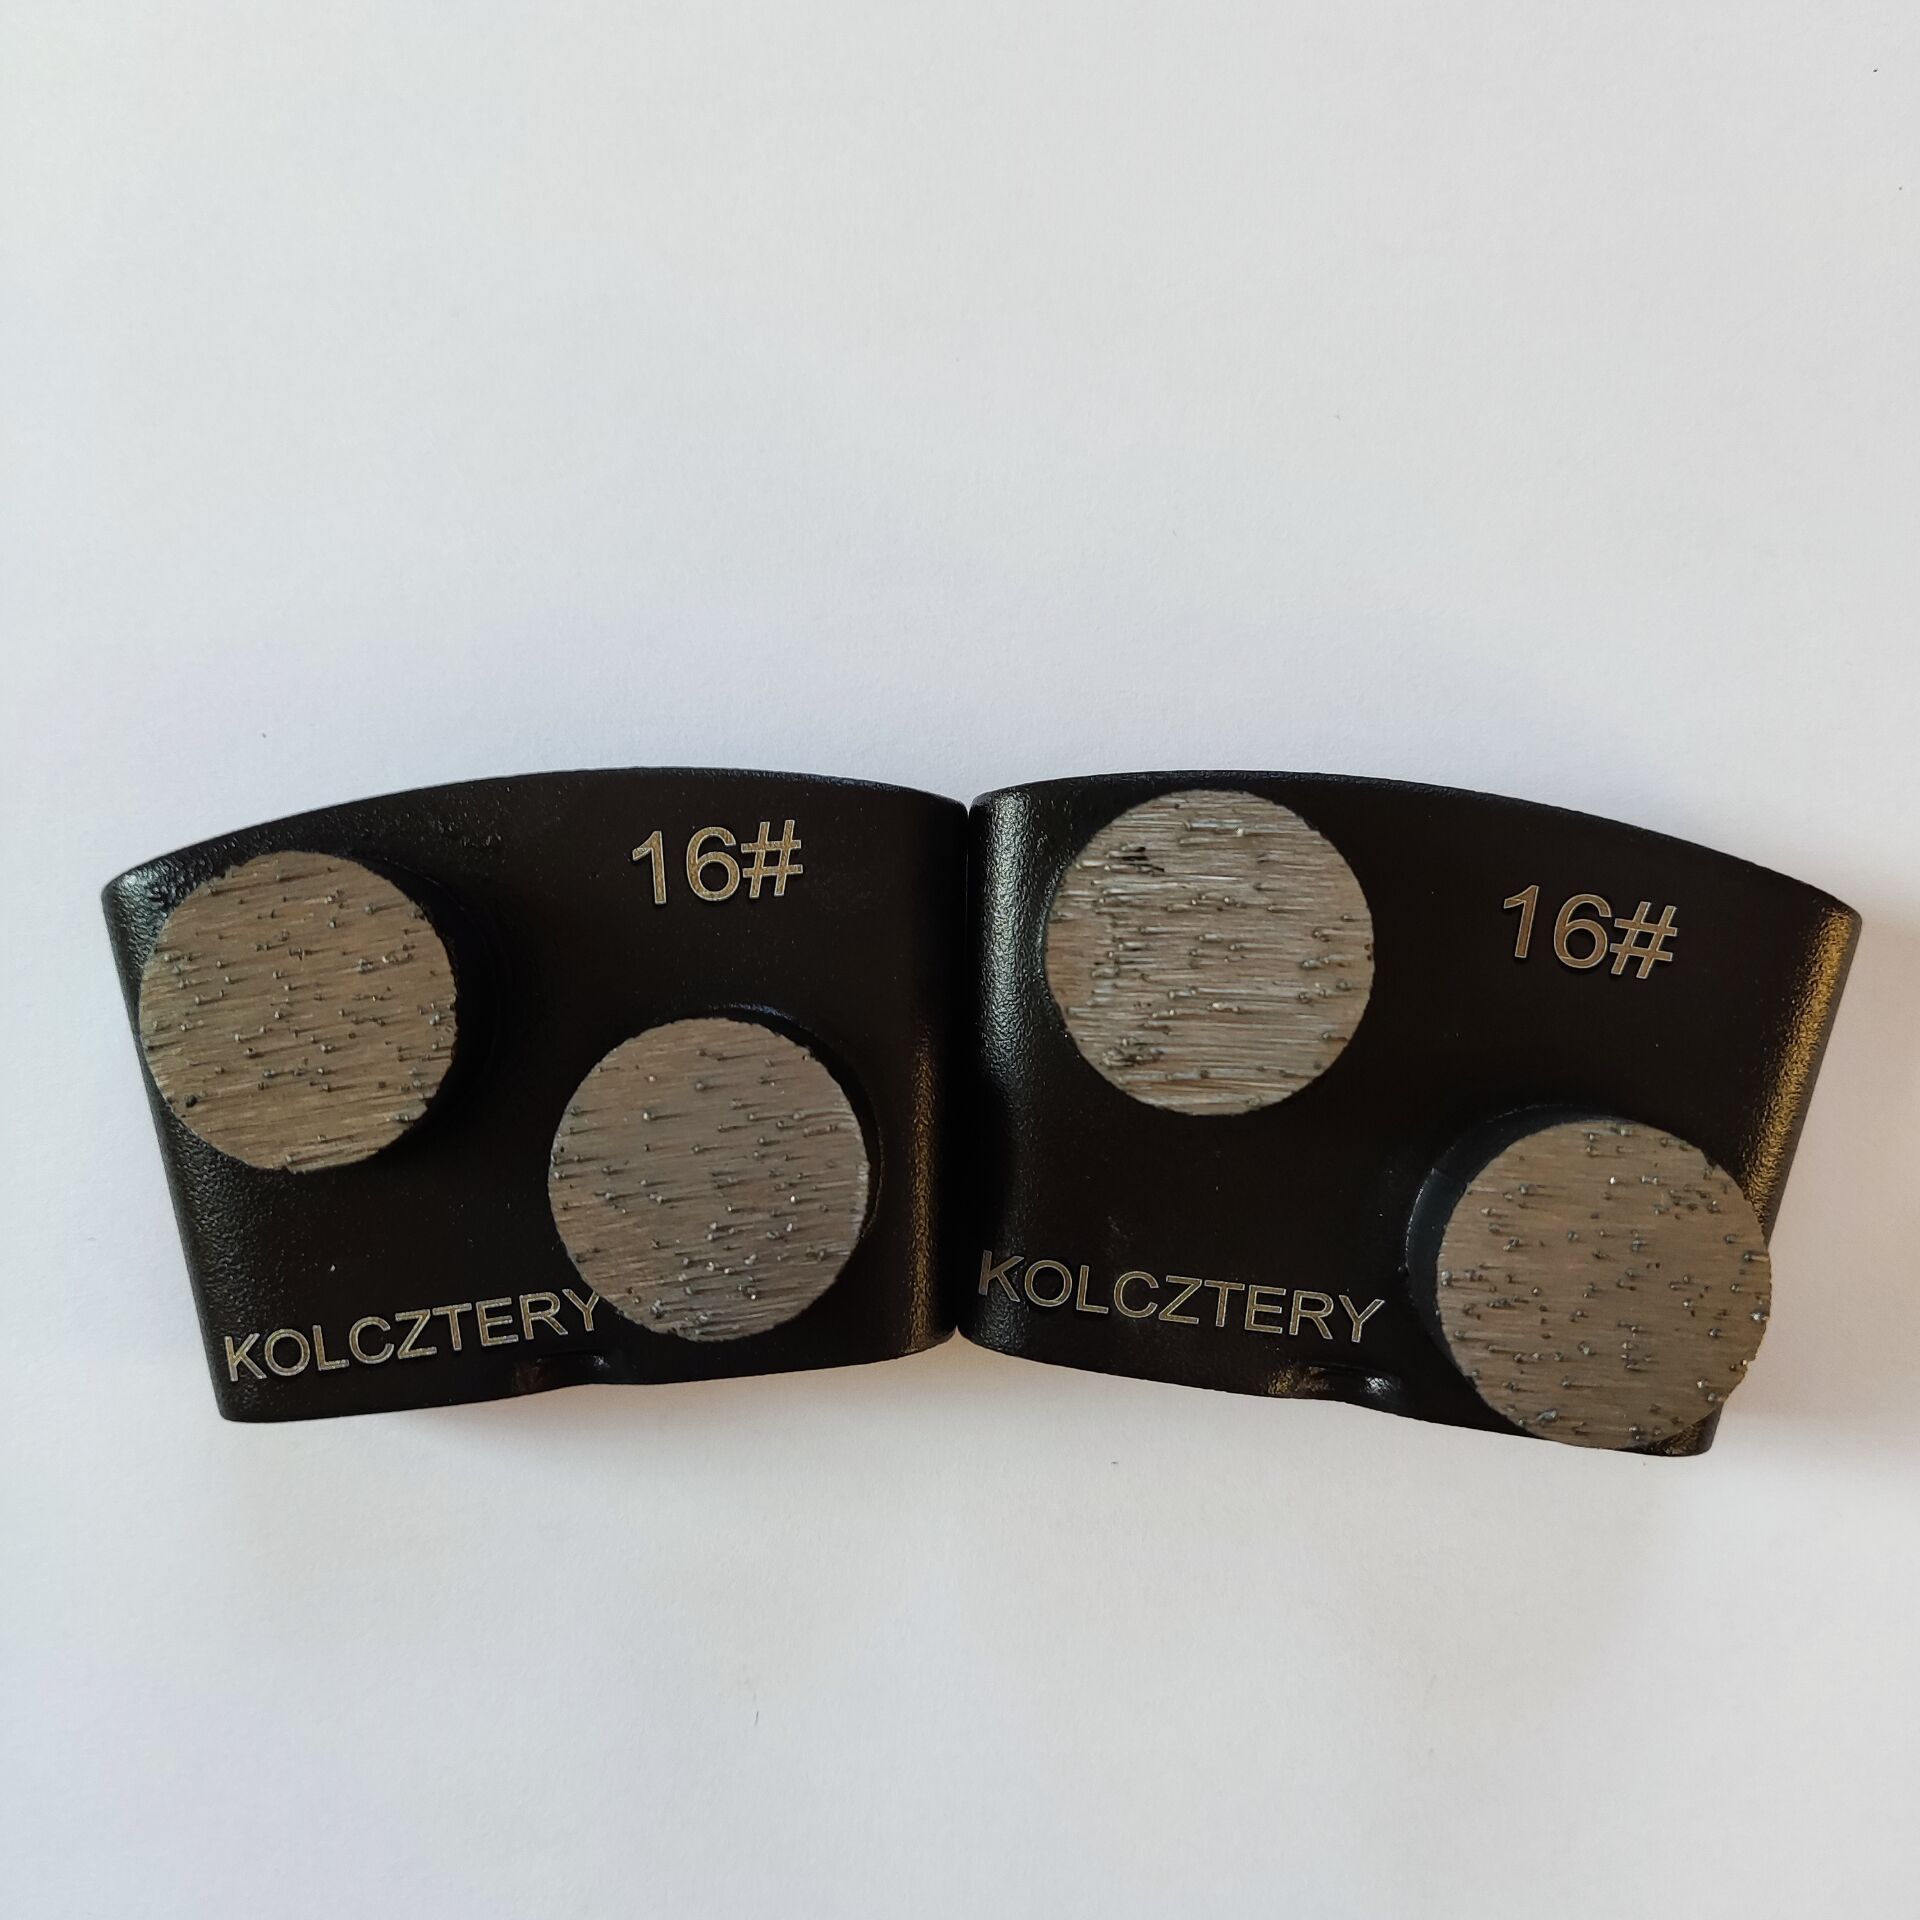 Kolcztery Двух круглых шлифовальных сегментов EZ81 EZ быстрое изменение бетонные напольные шлифовки 12 шт.